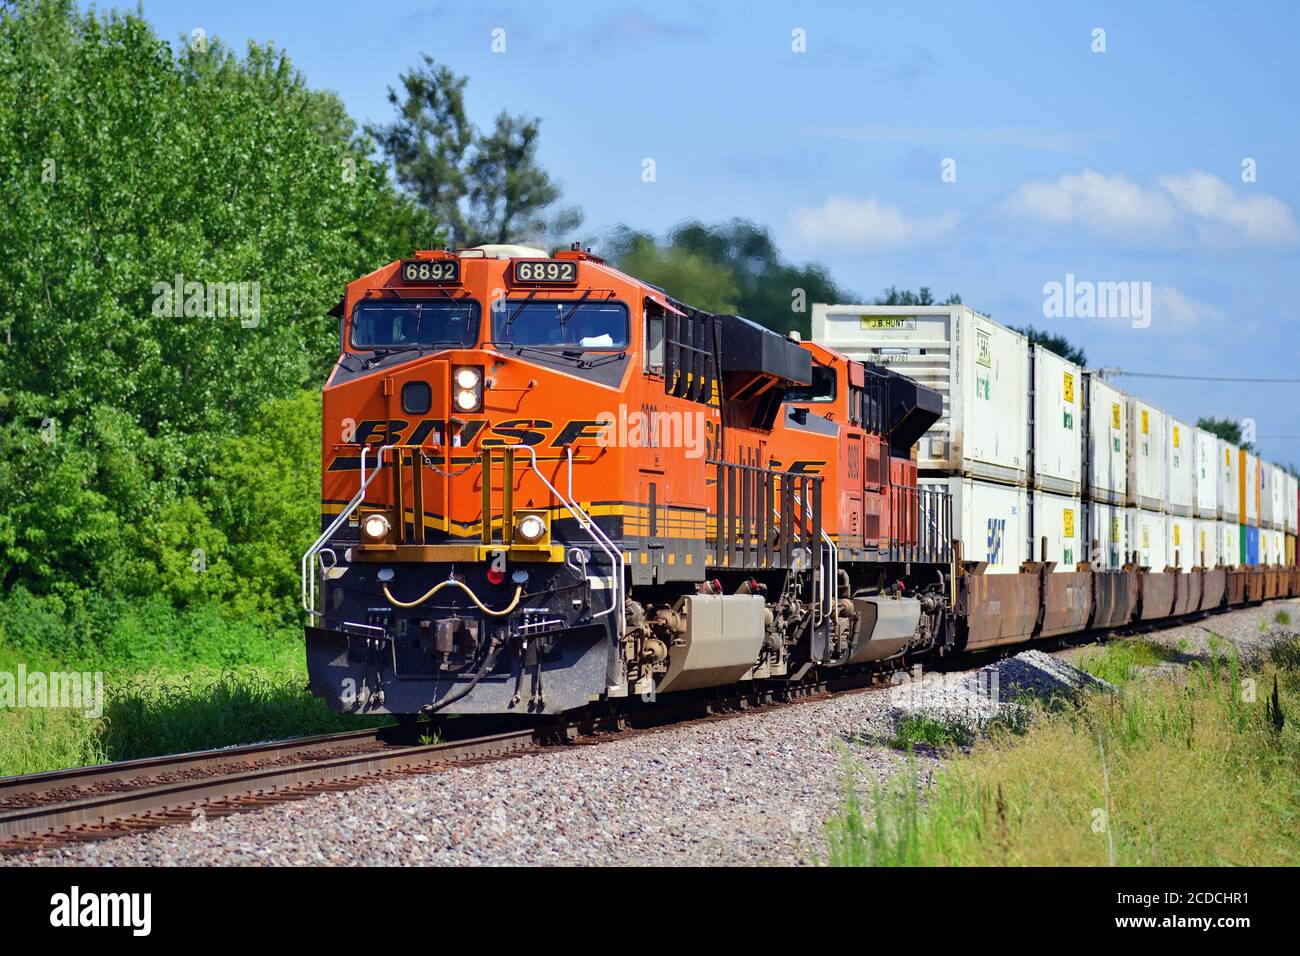 Flagg Center, Illinois, USA. Geführt von einem Paar Lokomotiven, ein Burlington Northern Santa Fe intermodale Güterzug führt durch das ländliche Illinois. Stockfoto